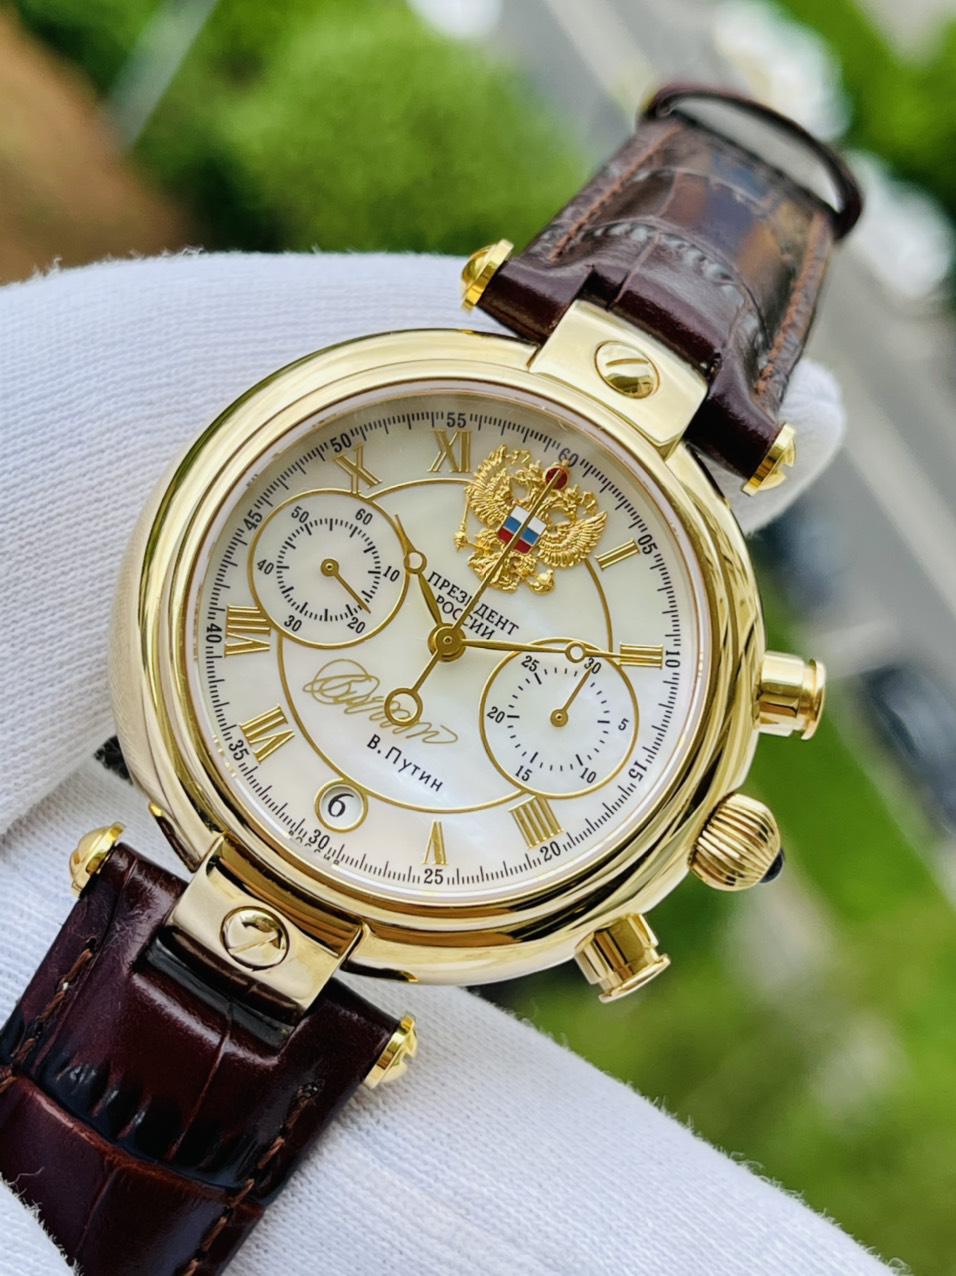 Đồng hồ Nga 1930 chữ ký tổng thống Putin vàng hồng - Luxury Watch